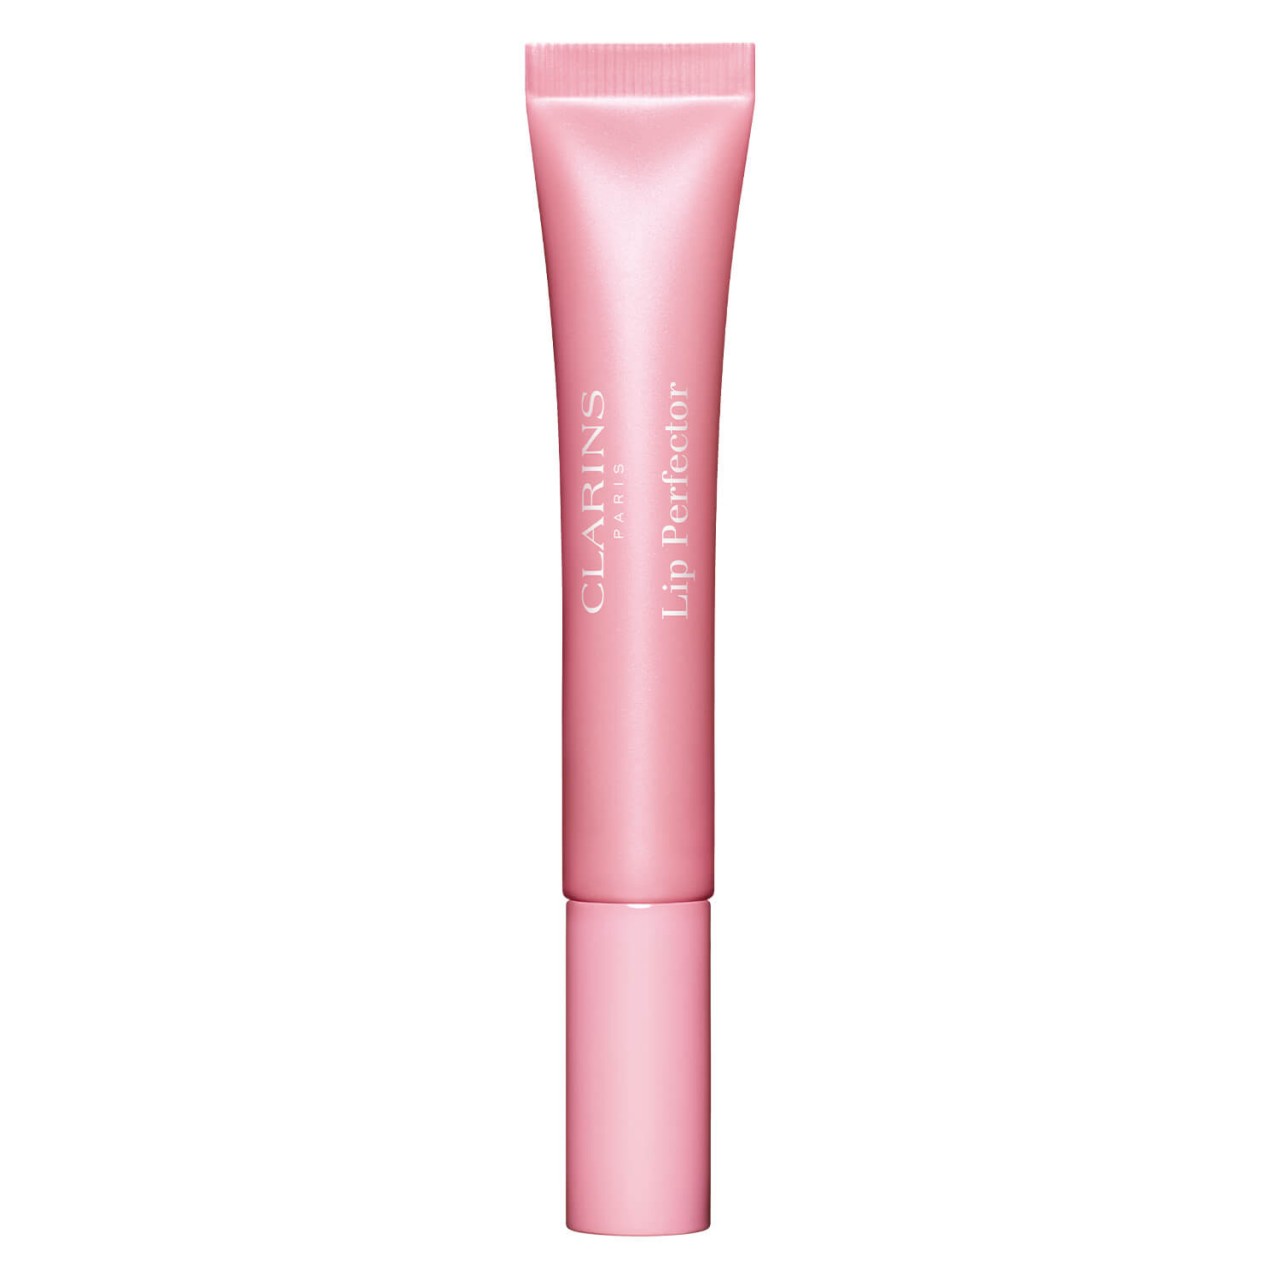 Lip Perfector - Soft Pink Glow 21 von Clarins